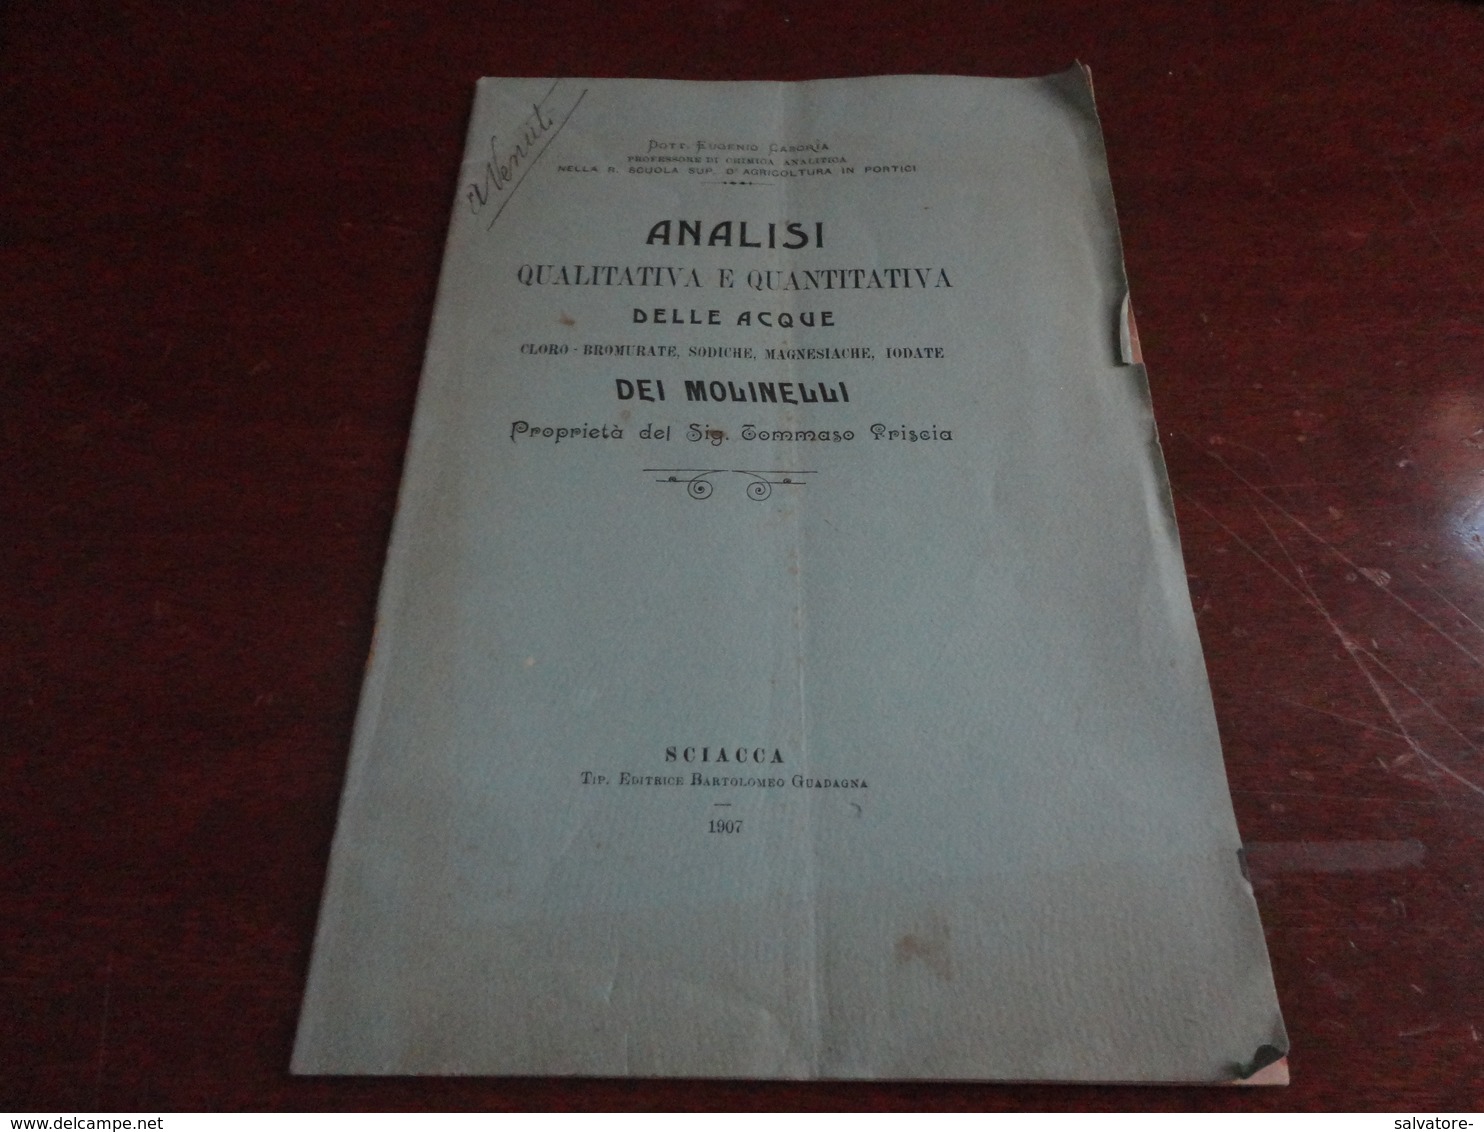 ANALISI QUALITATIVA E QUANTITATIVA DELLE ACQUE DEI MOLINELLI-DOTTOR EUGENIO CASORIA - SCIACCA (AG) 1907 - Médecine, Biologie, Chimie